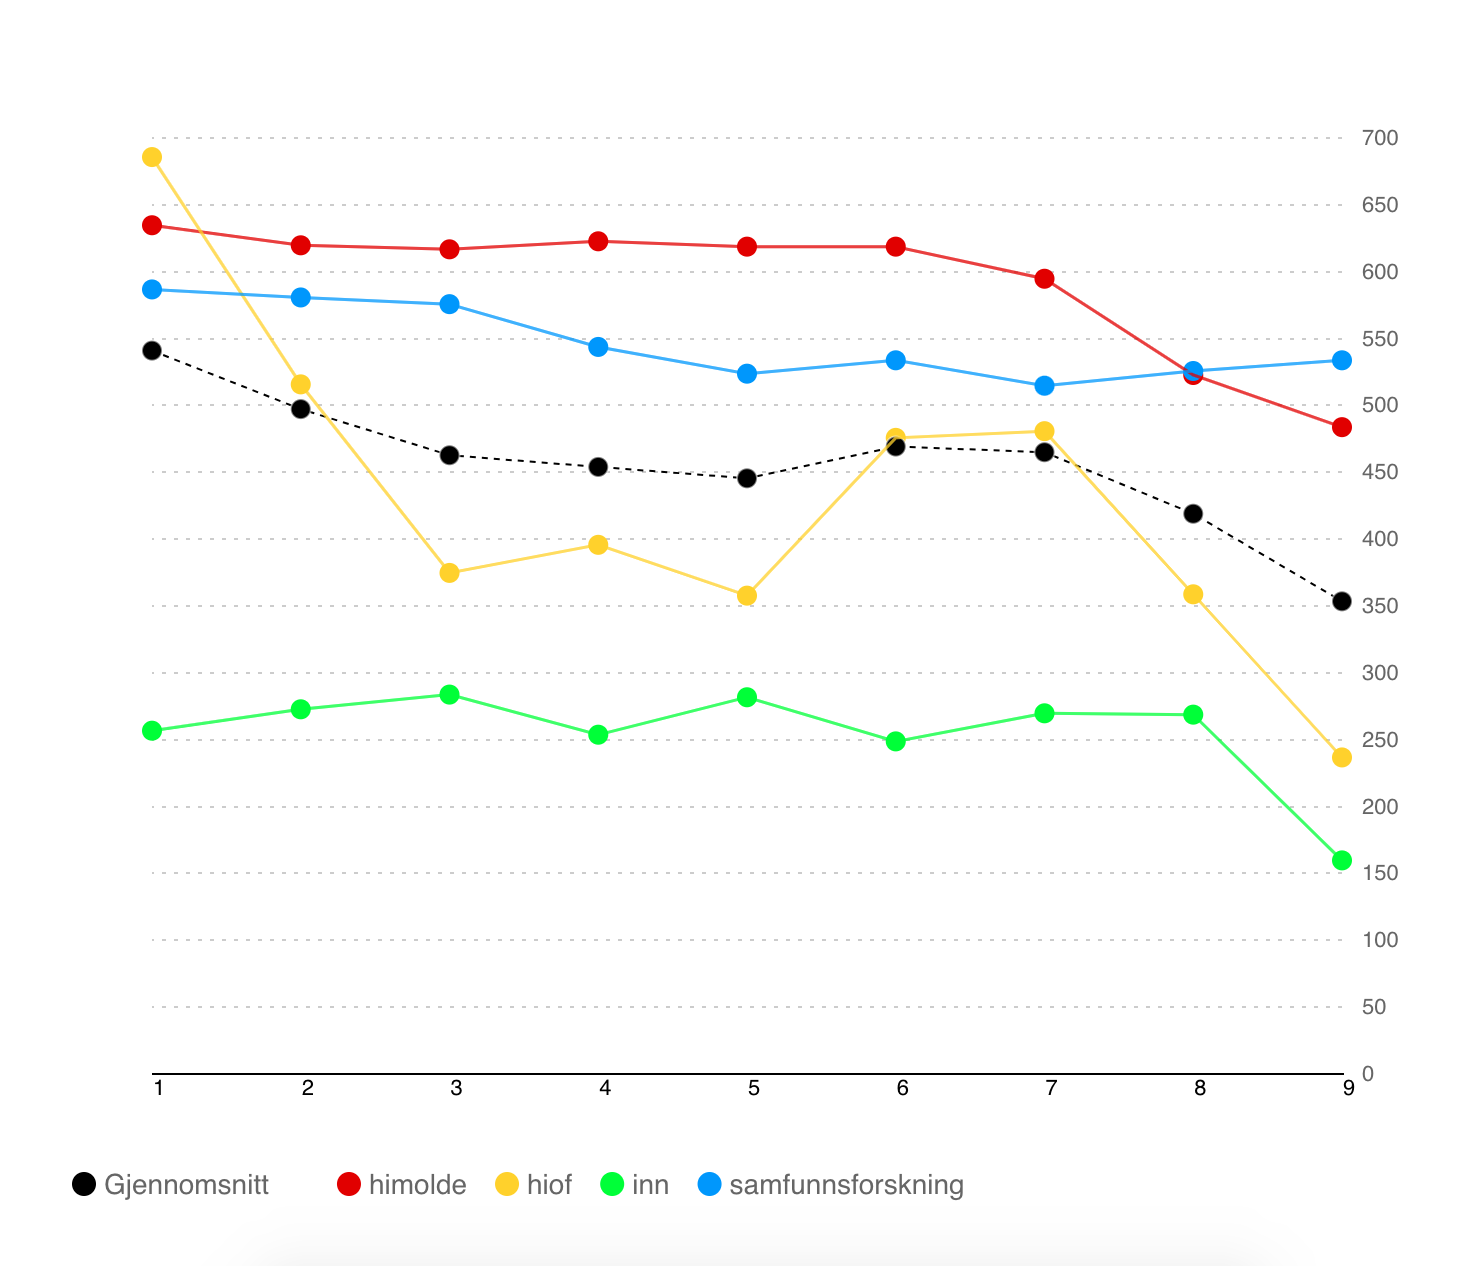 Graf som viser en positiv utvikling med færre uu-feil for de fleste nettstedene.